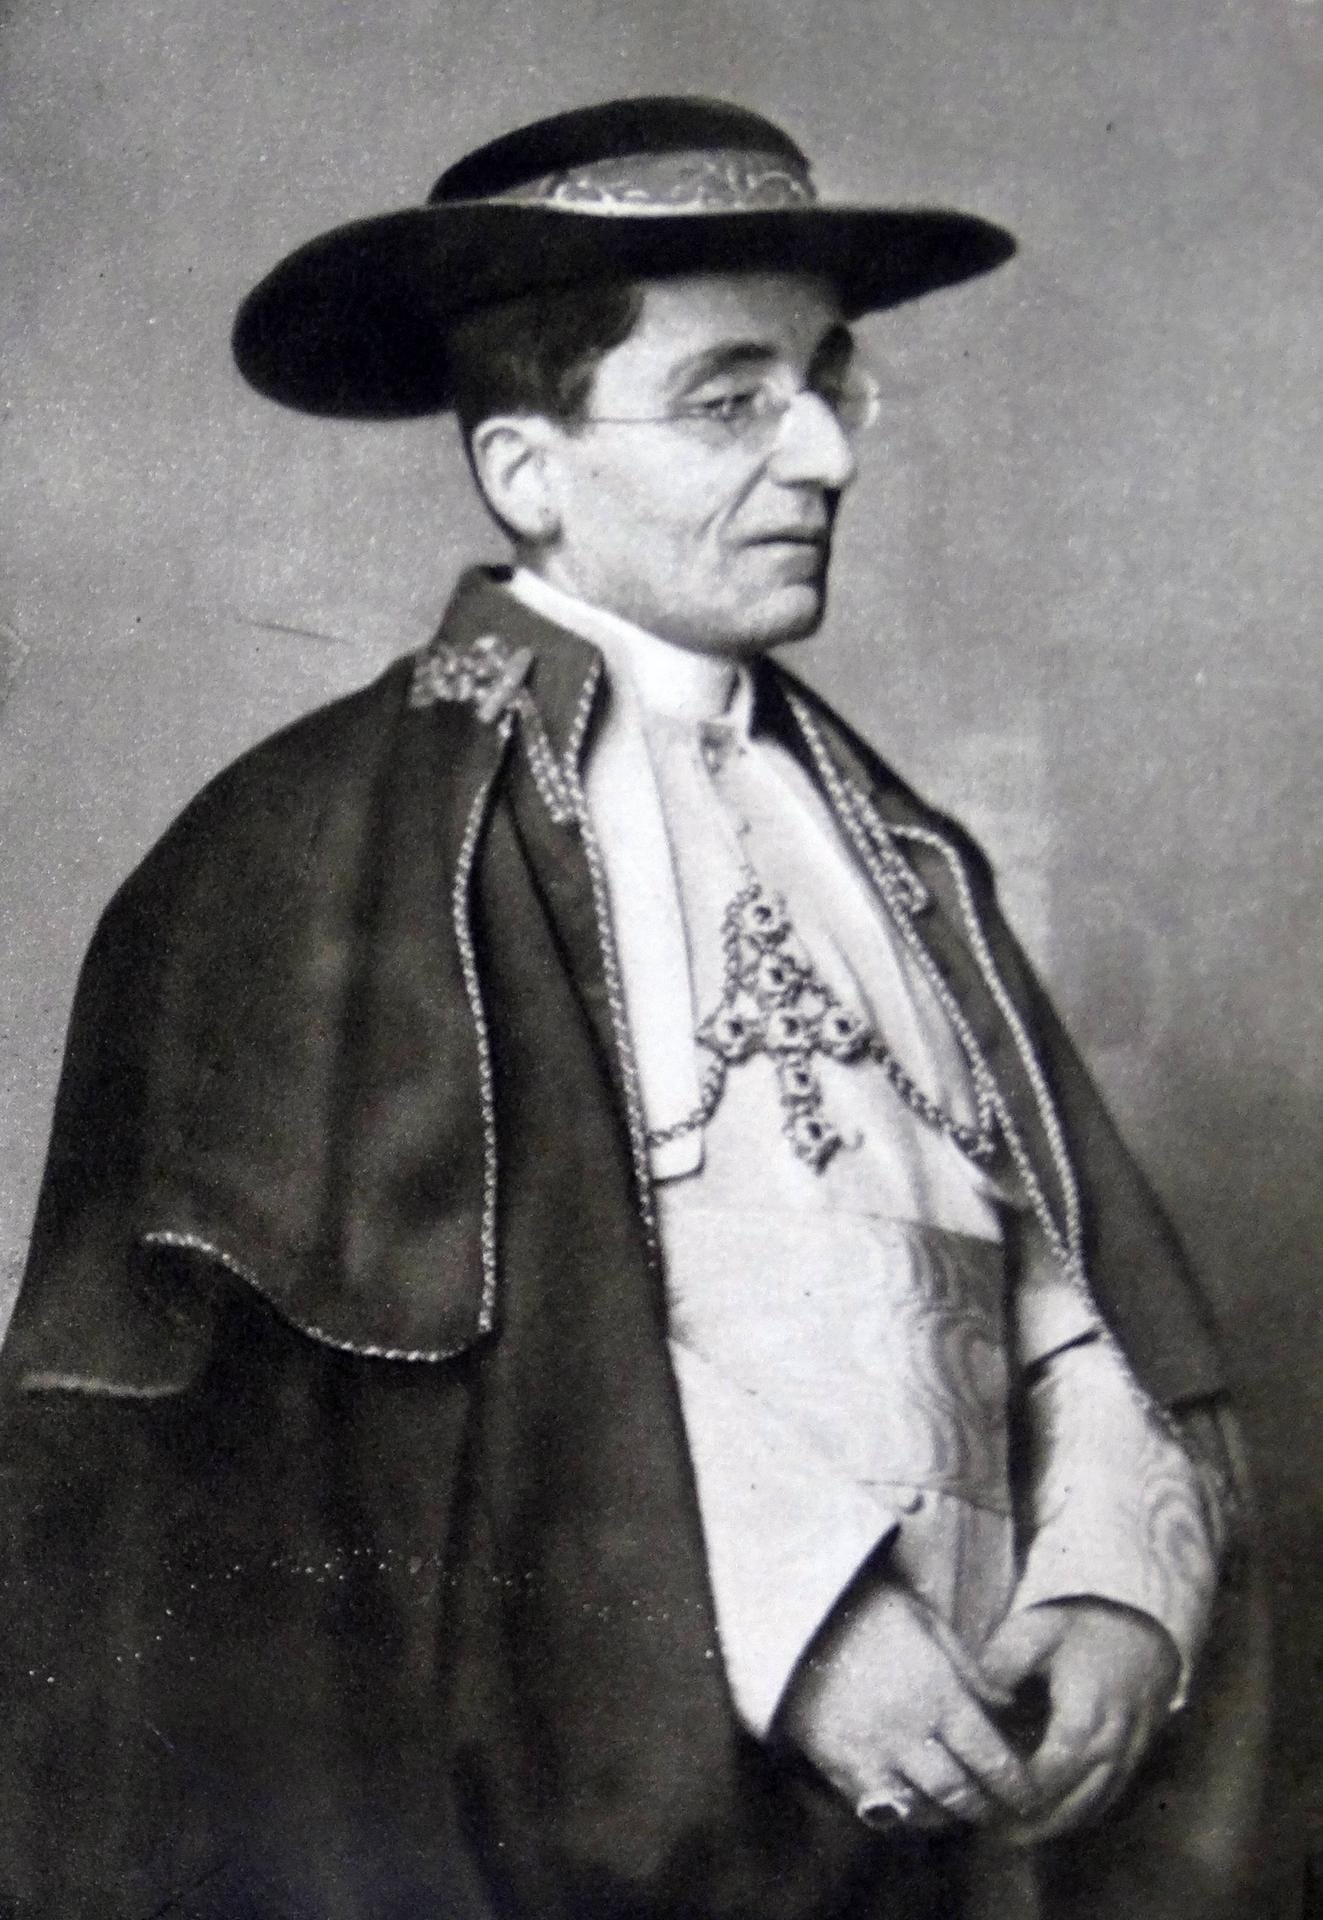 Zwischen 1914 und 1922 (Aufnahmedatum unbekannt): Papst Benedict XV. oder Giacomo della Chiesa kam aus Sardinien.